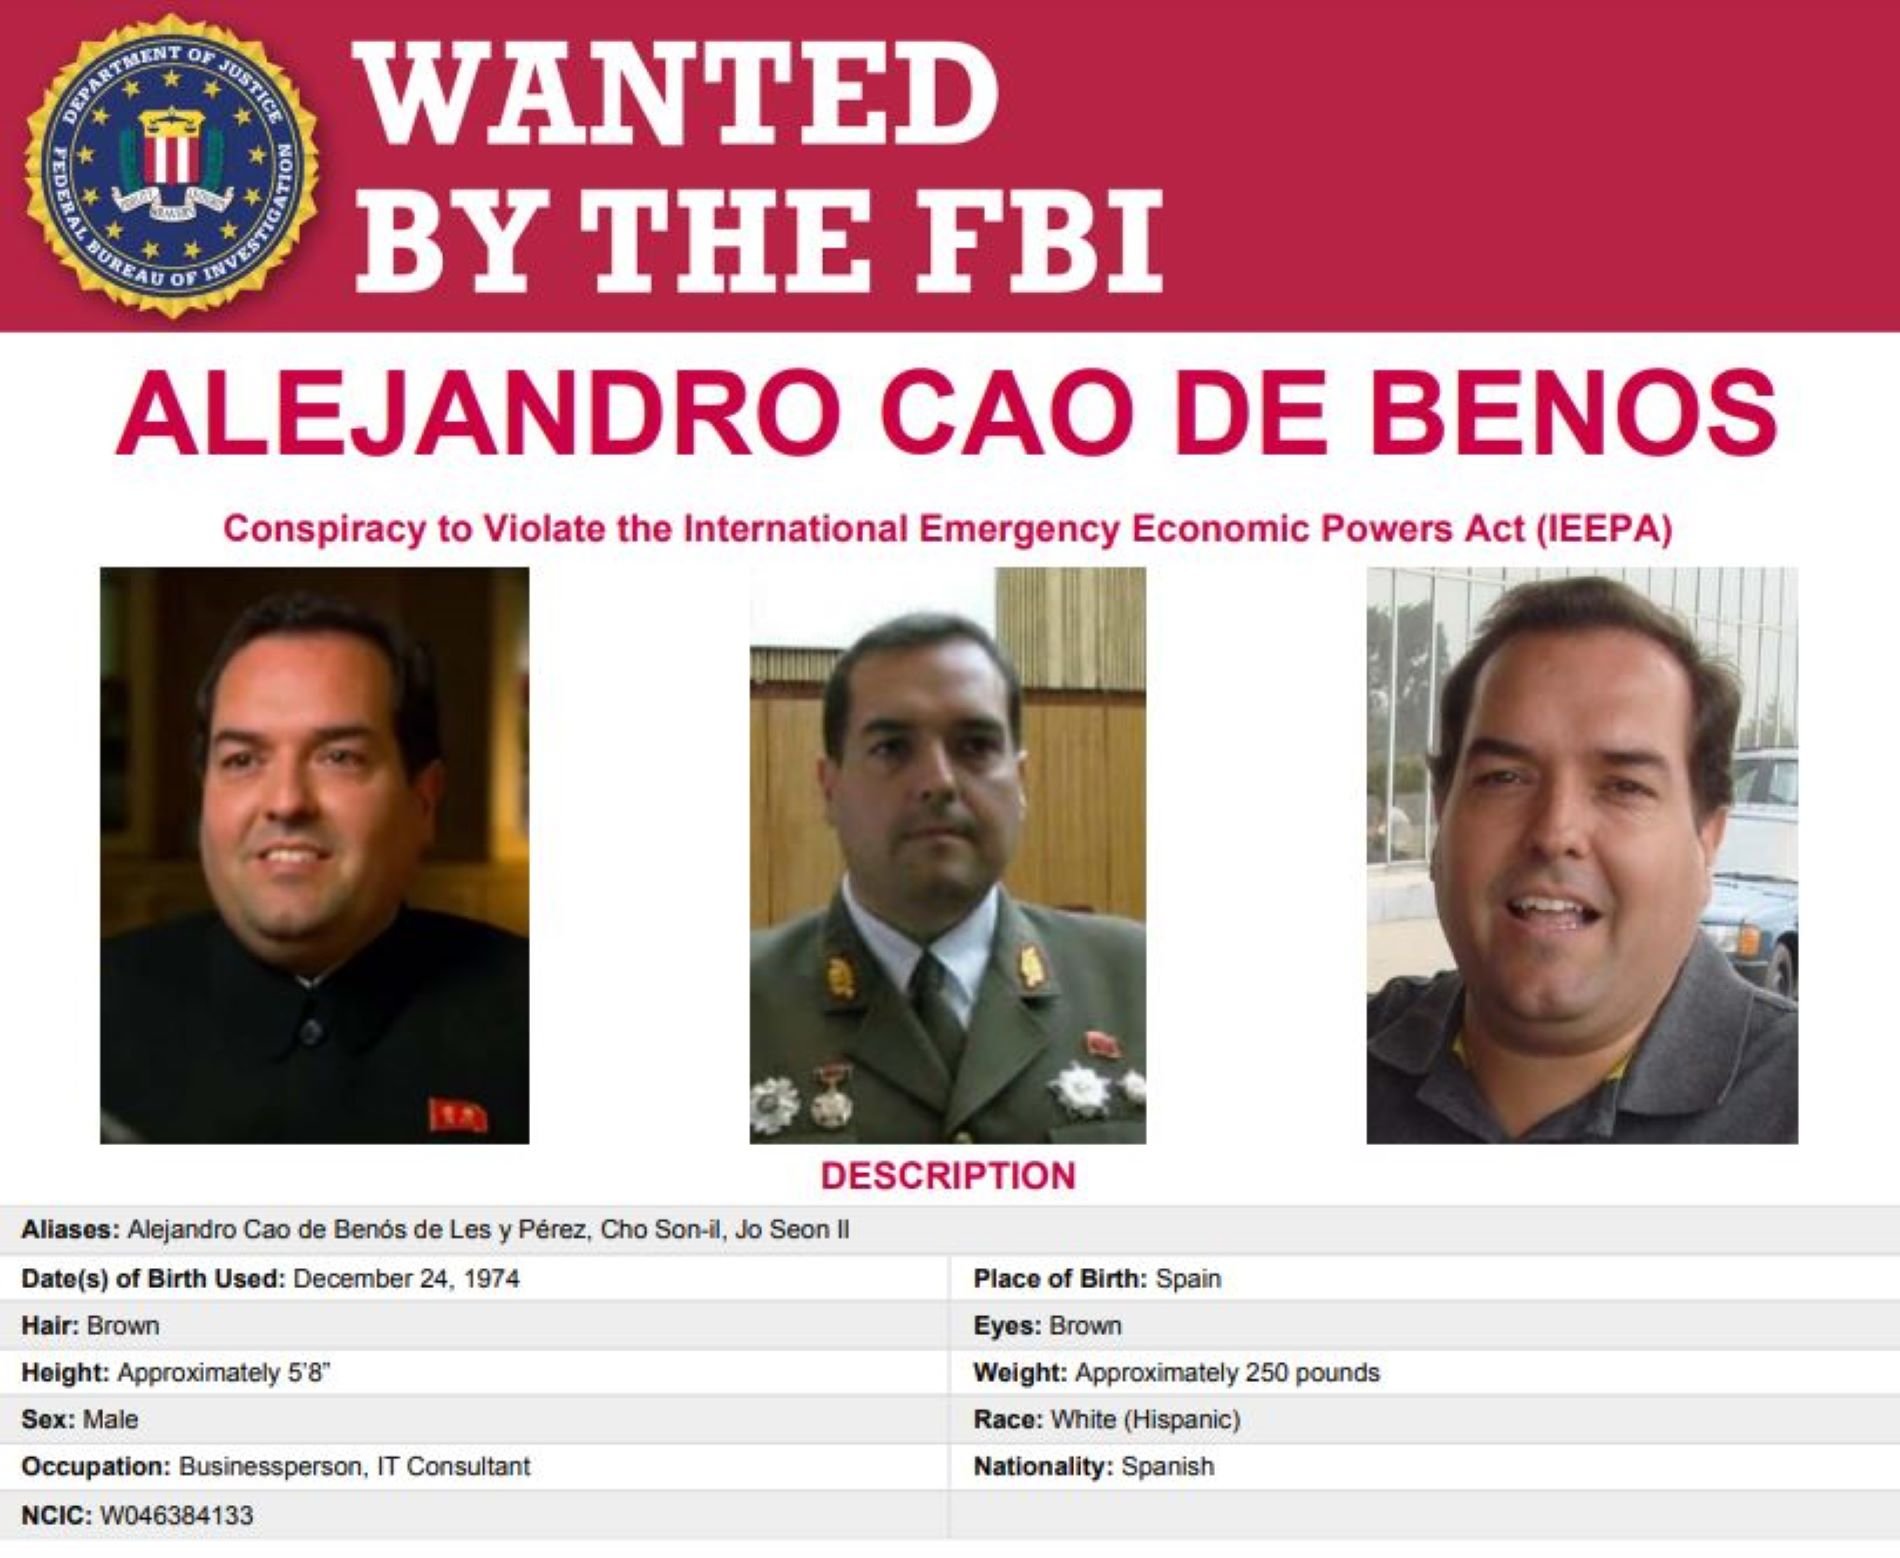 Orden de busca y captura del FBI contra el catalán Cao de Benós